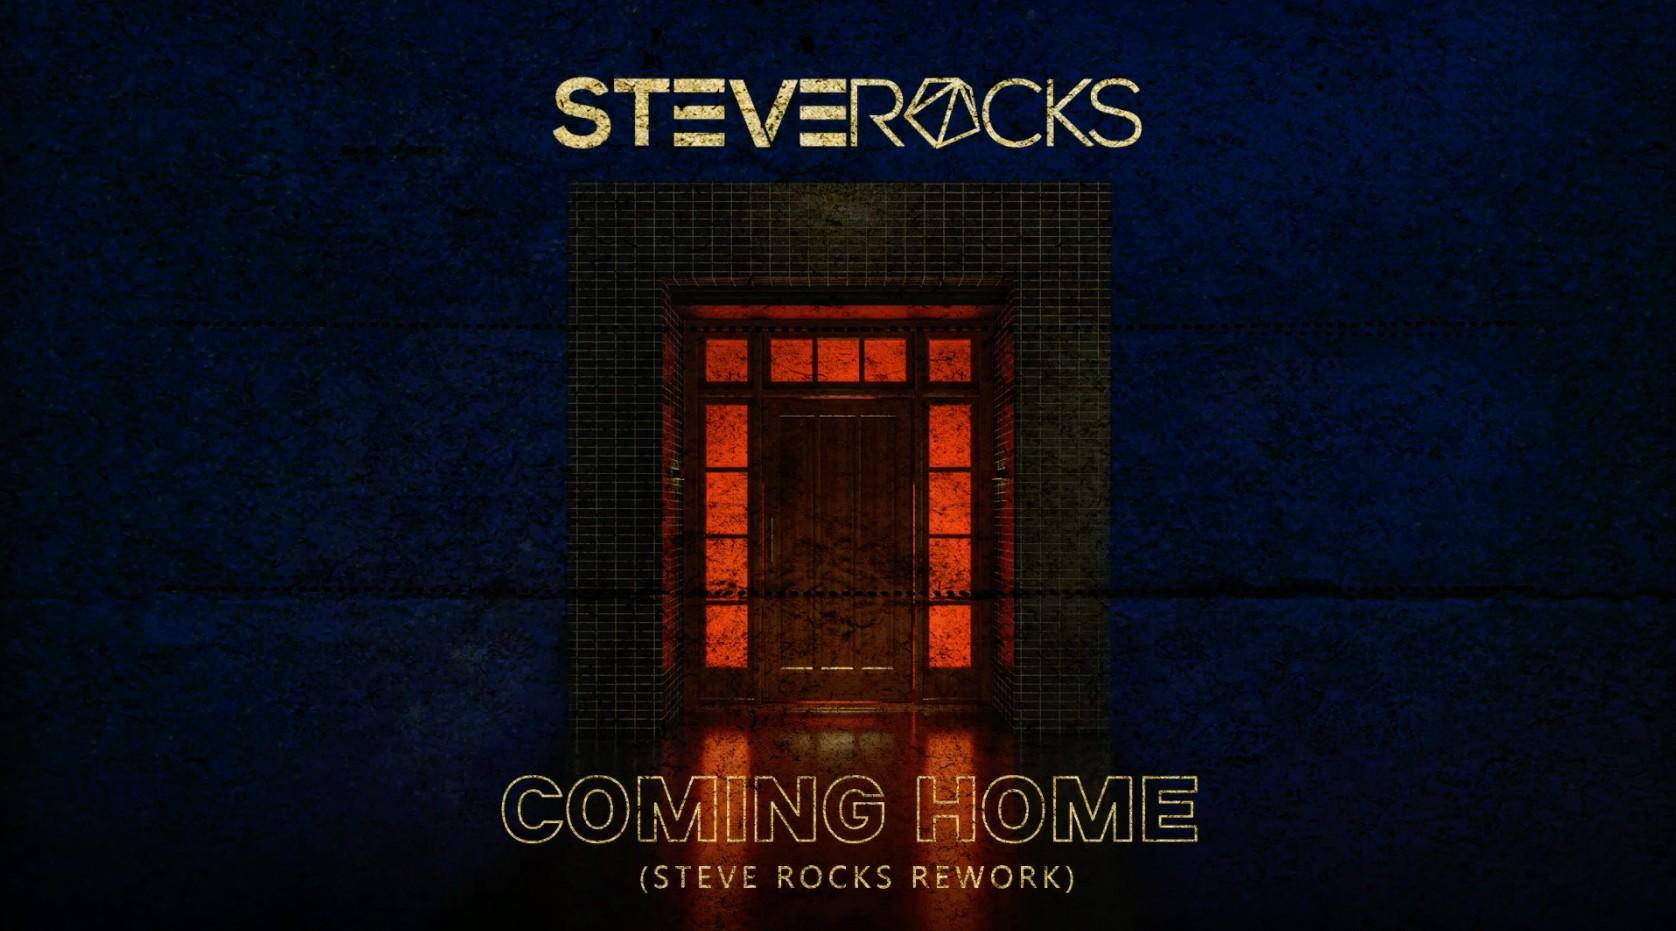 STEVEROCKS_COMING HOME MV_ALL_H264 V0820